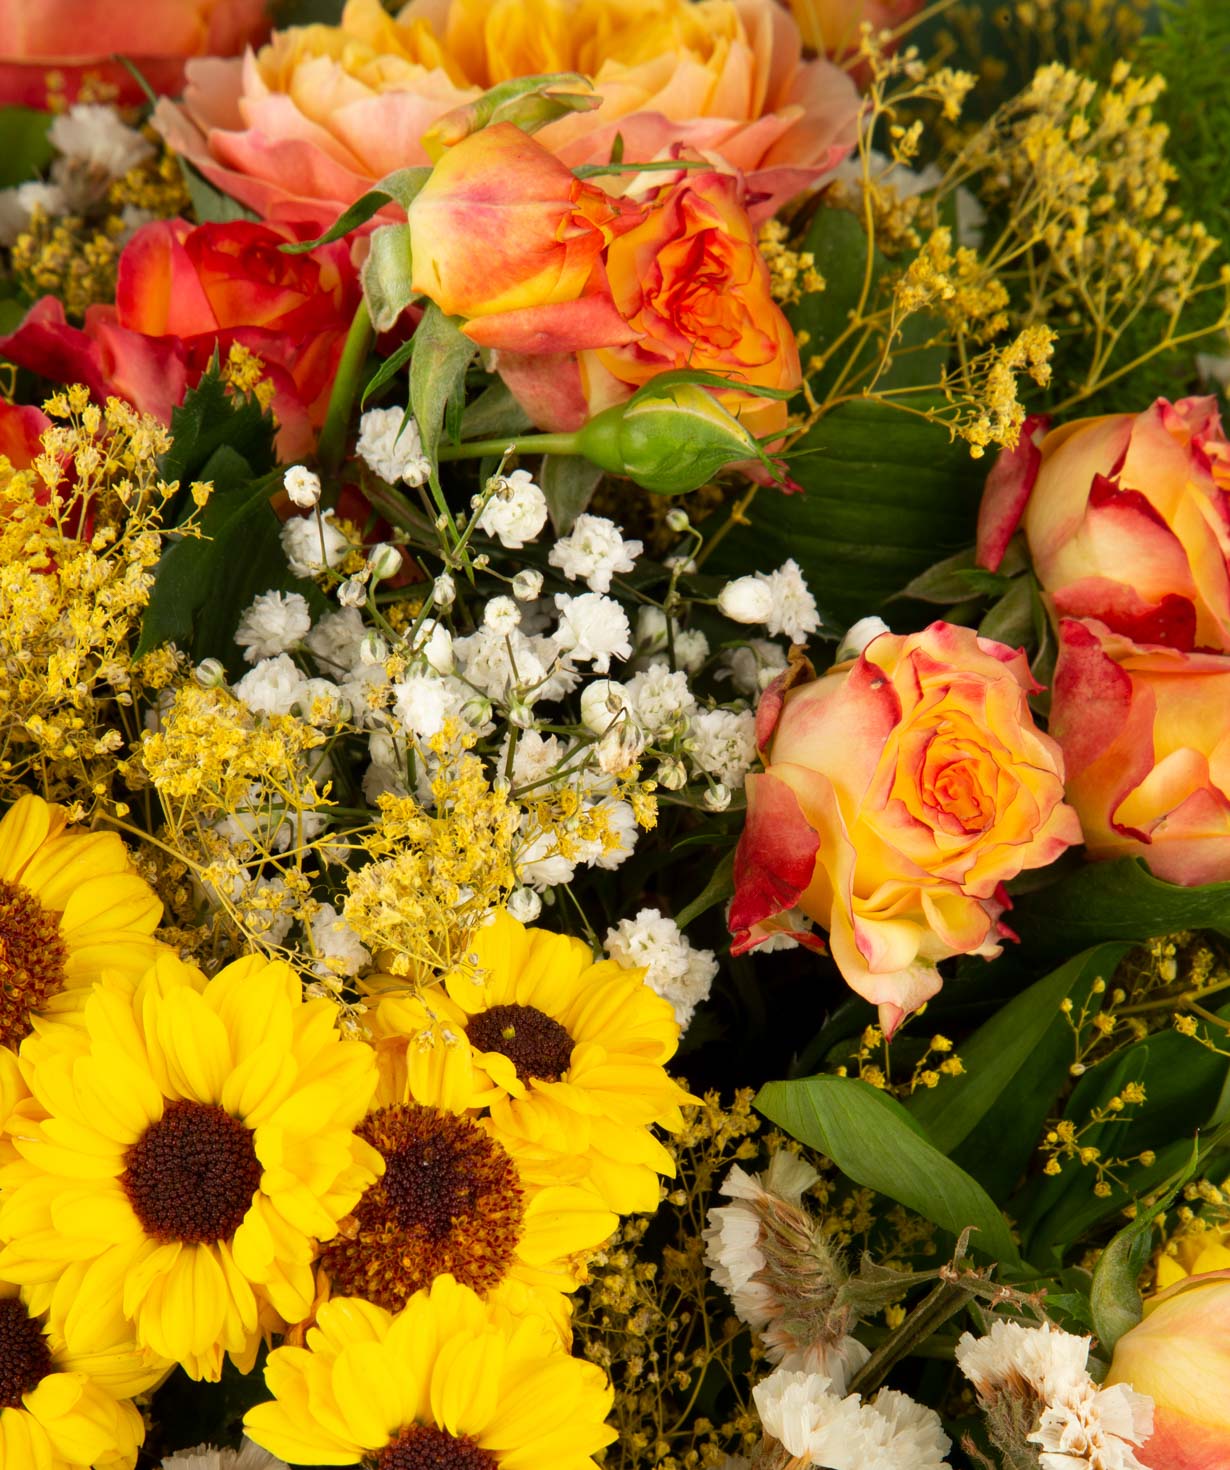 Ծաղկեփունջ «Քեյփ Թաուն» վարդերով, քրիզանթեմներով և գիպսոֆիլիաներով